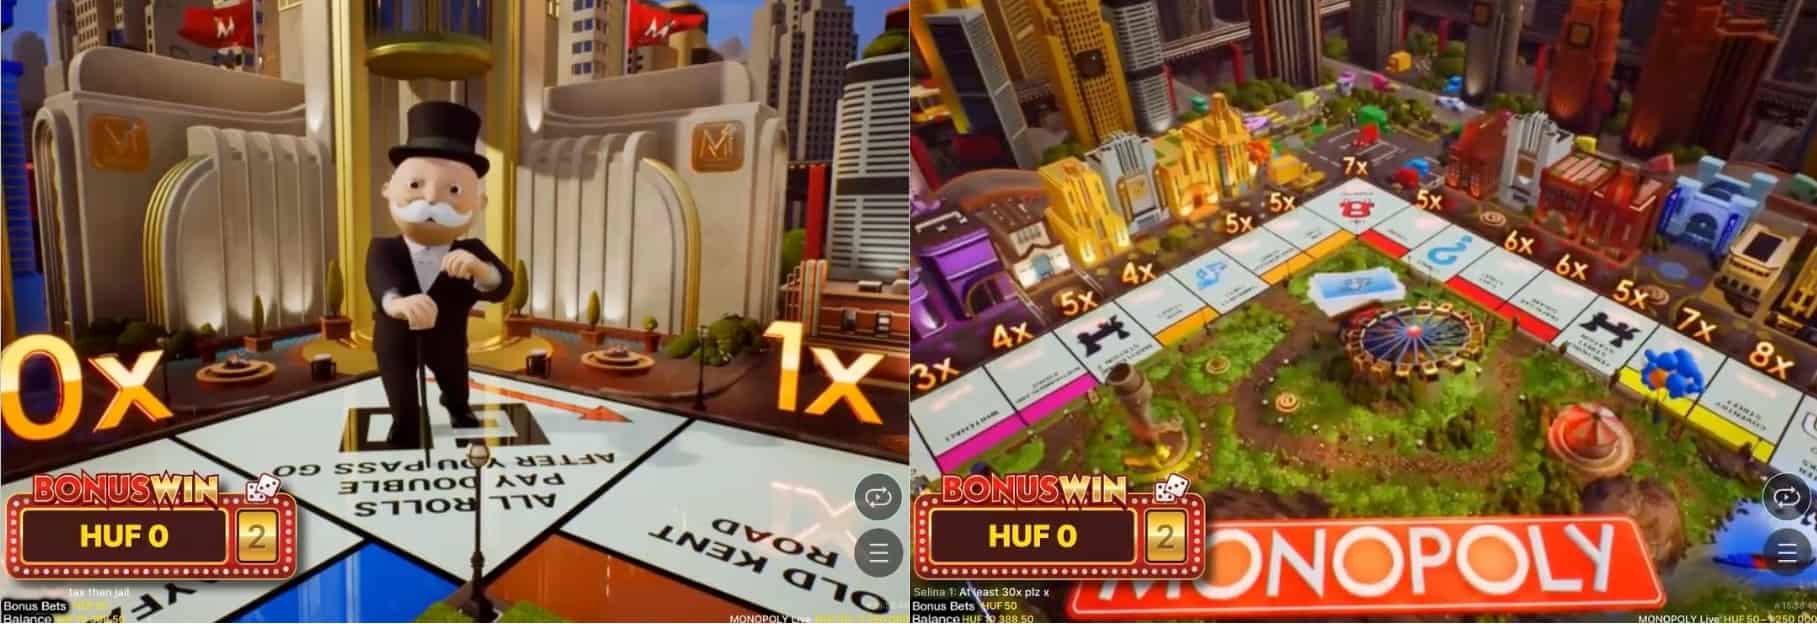 Monopoly-Bonus-Spiel-Funktion